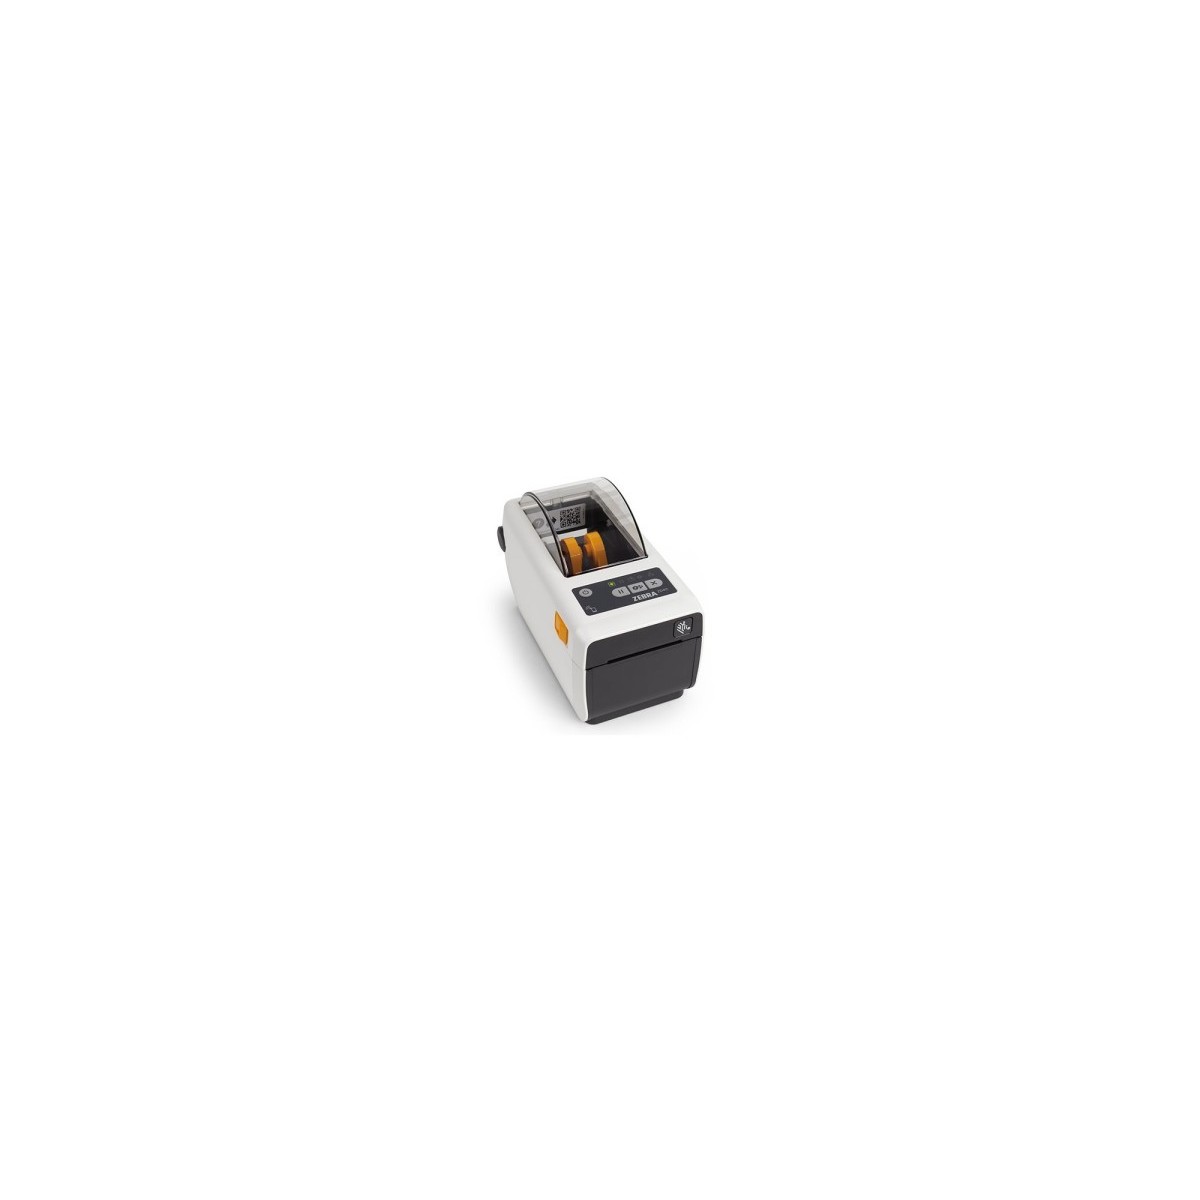 Zebra Direct Thermal Printer ZD411 Healthcare 300 dpi USB USB - Label Printer - Label Printer